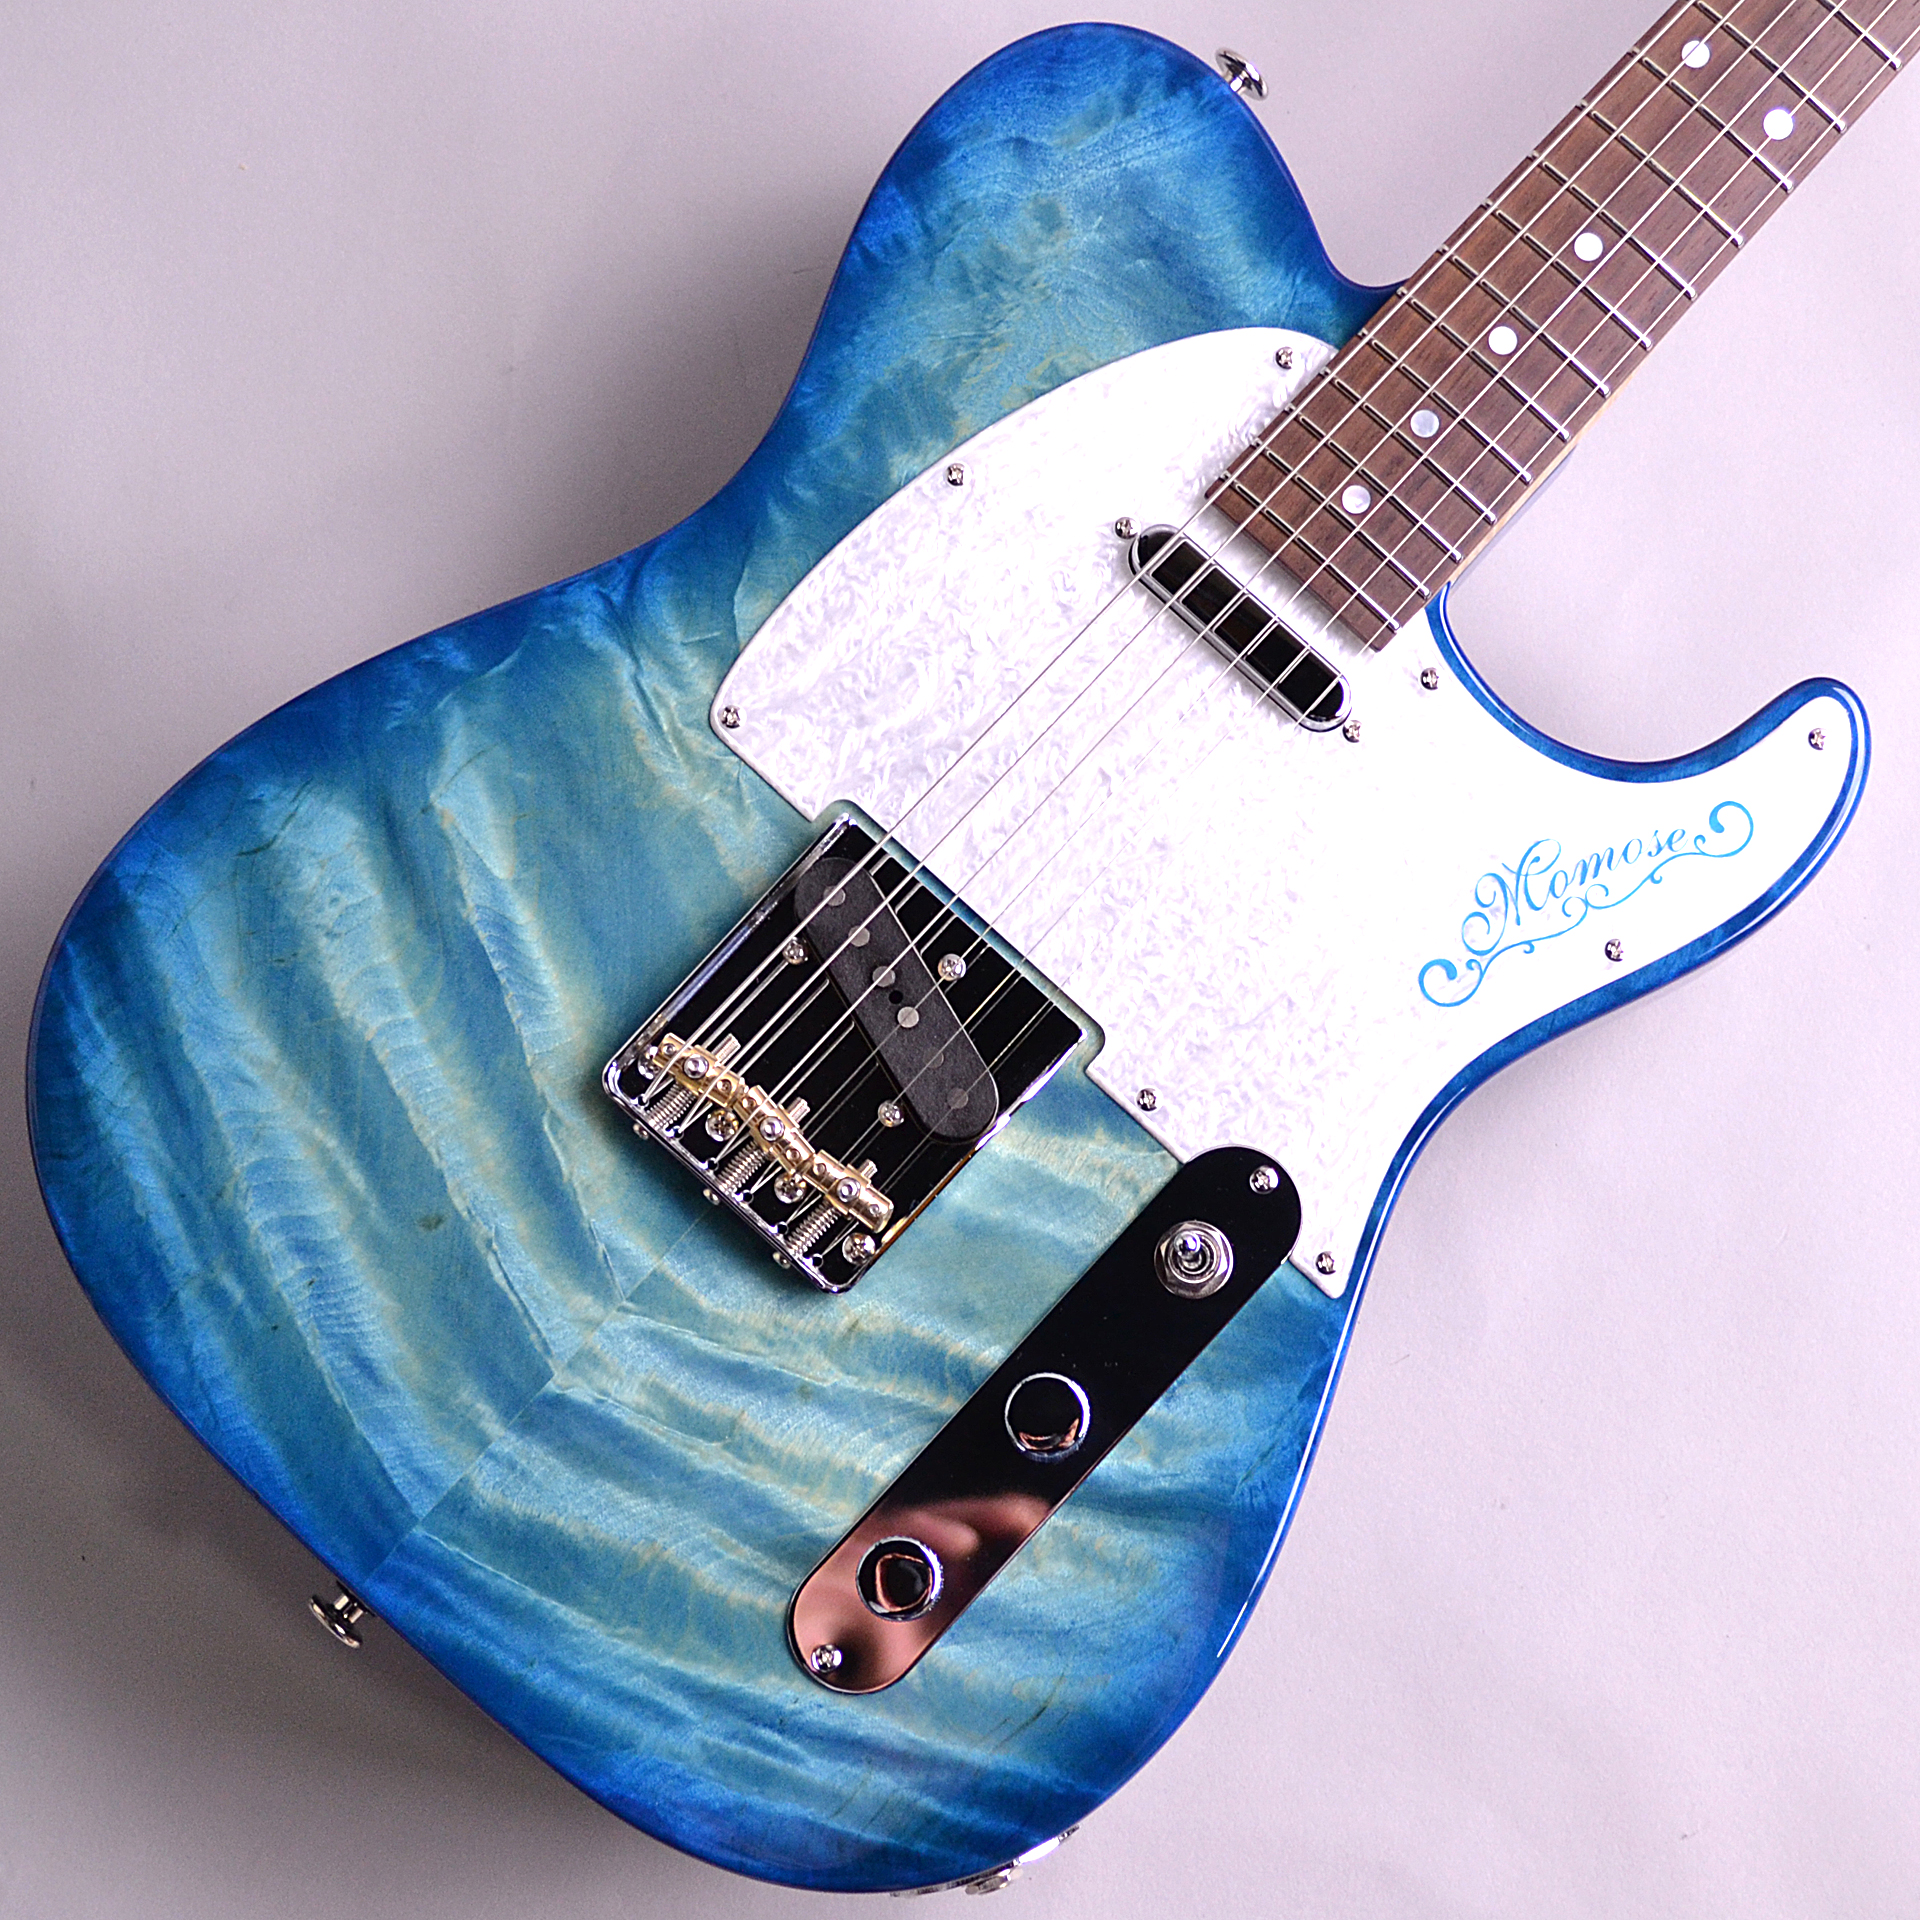 *Deviser One Day Guitar Showで買い付けた1本モノ 2021年 One Day Guitar Showのテーマである”青” 近年、人気が高いカラーリングですが非常に難しいカラーであり木肌の色に大きく影響を受けます。 その木材が持っている特徴を最大限に活かす飛鳥工場の塗装職人 […]